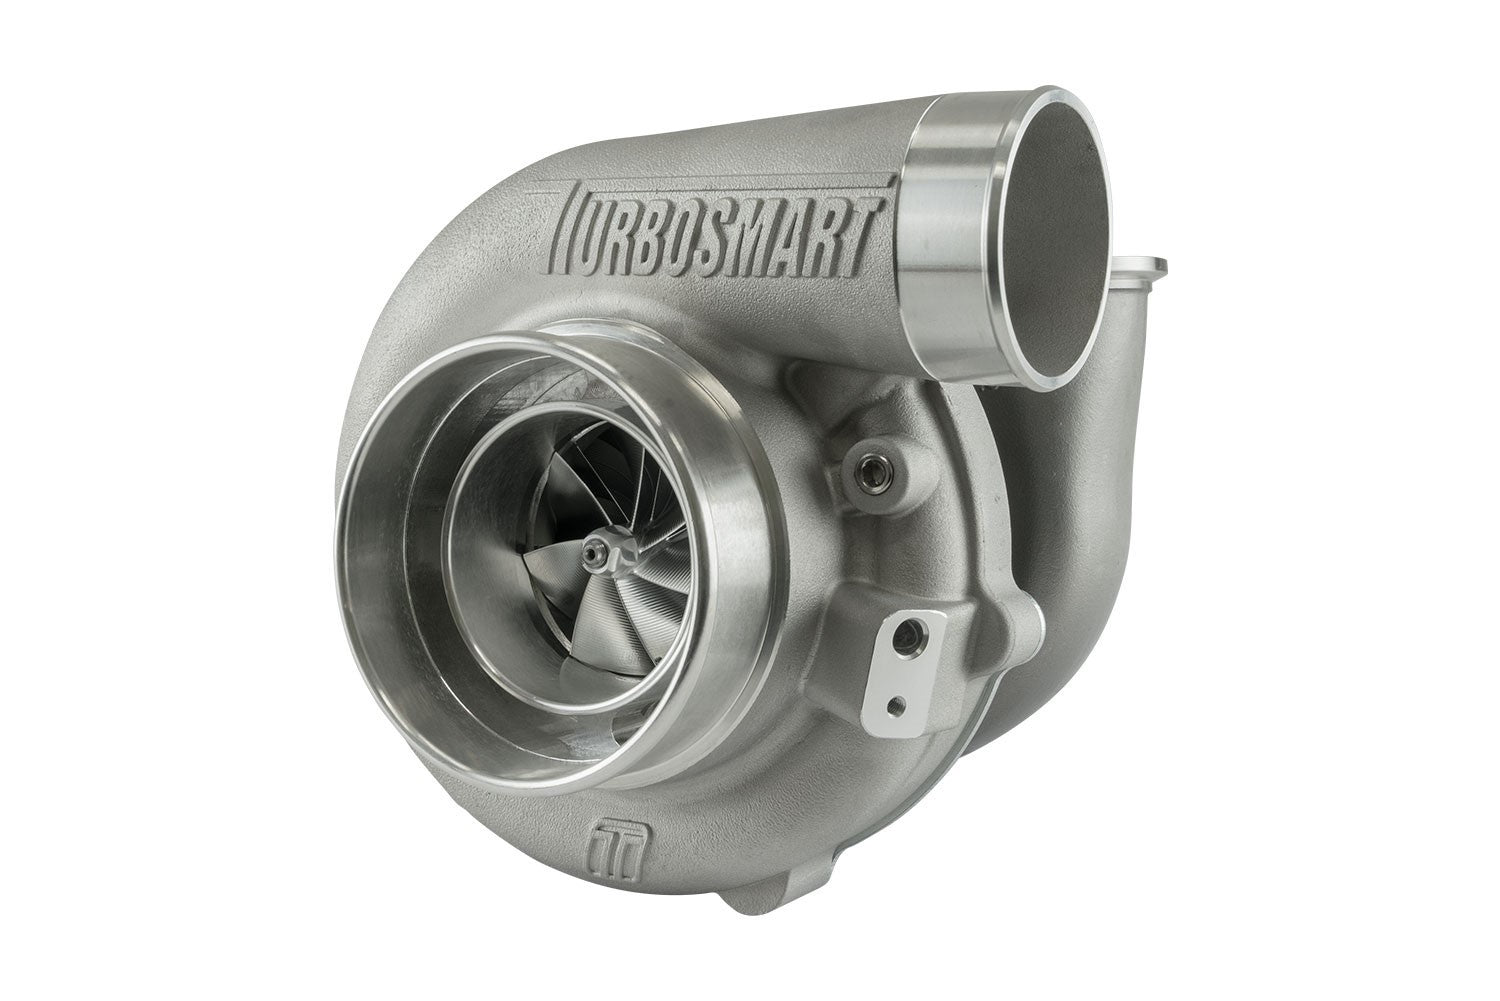 Turbosmart Oil Cooled 6466 V-Band Inlet/Outlet A/R 0.82 External Wastegate Turbocharger TS-1-6466VB082E